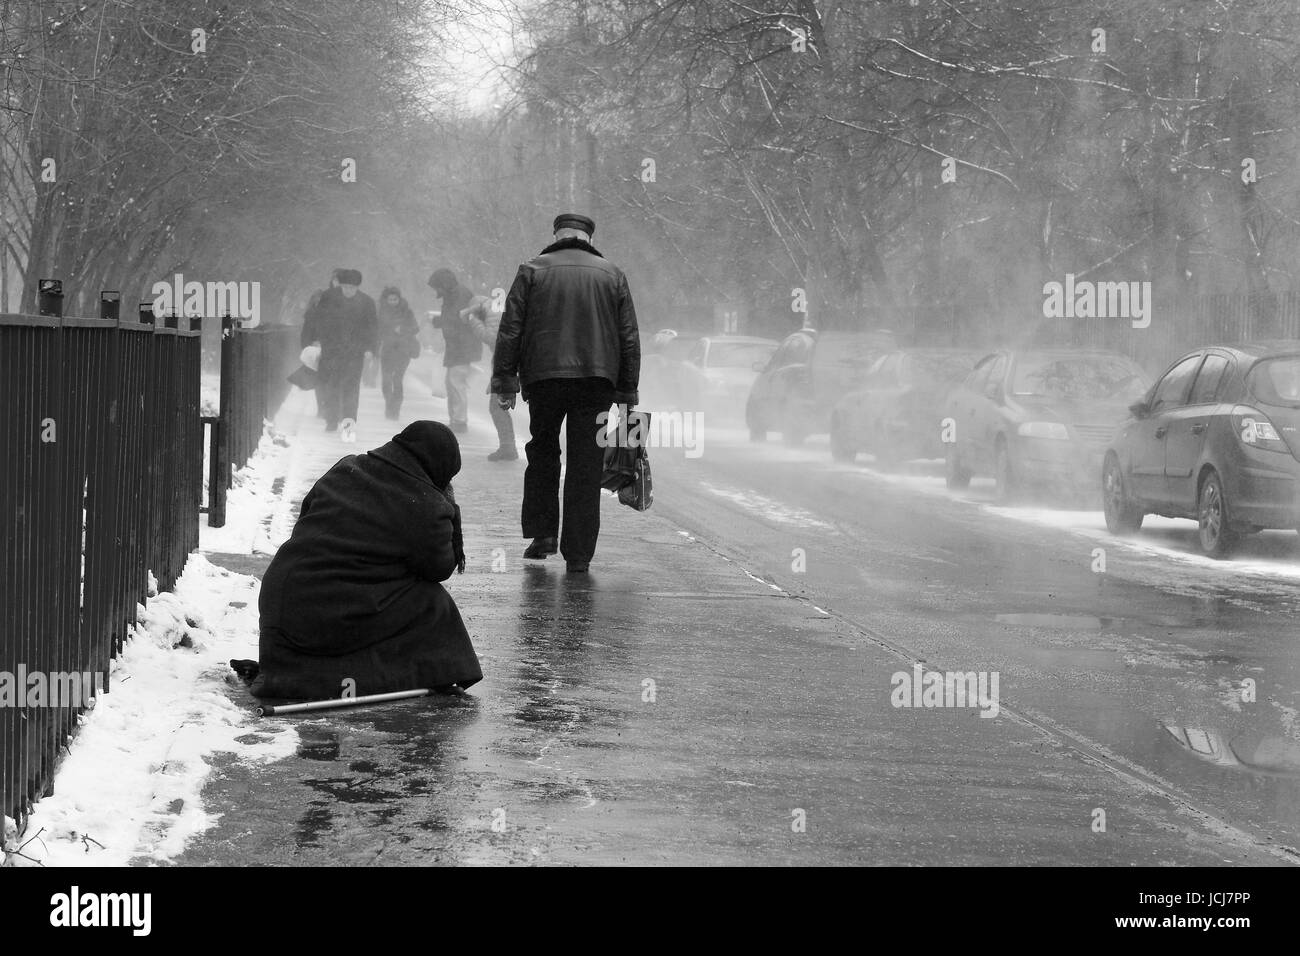 Moscou, Russie, le 24 mars 2011 : La vieille femme demande l'aumône, assis sur le trottoir pendant la tempête de neige. Banque D'Images